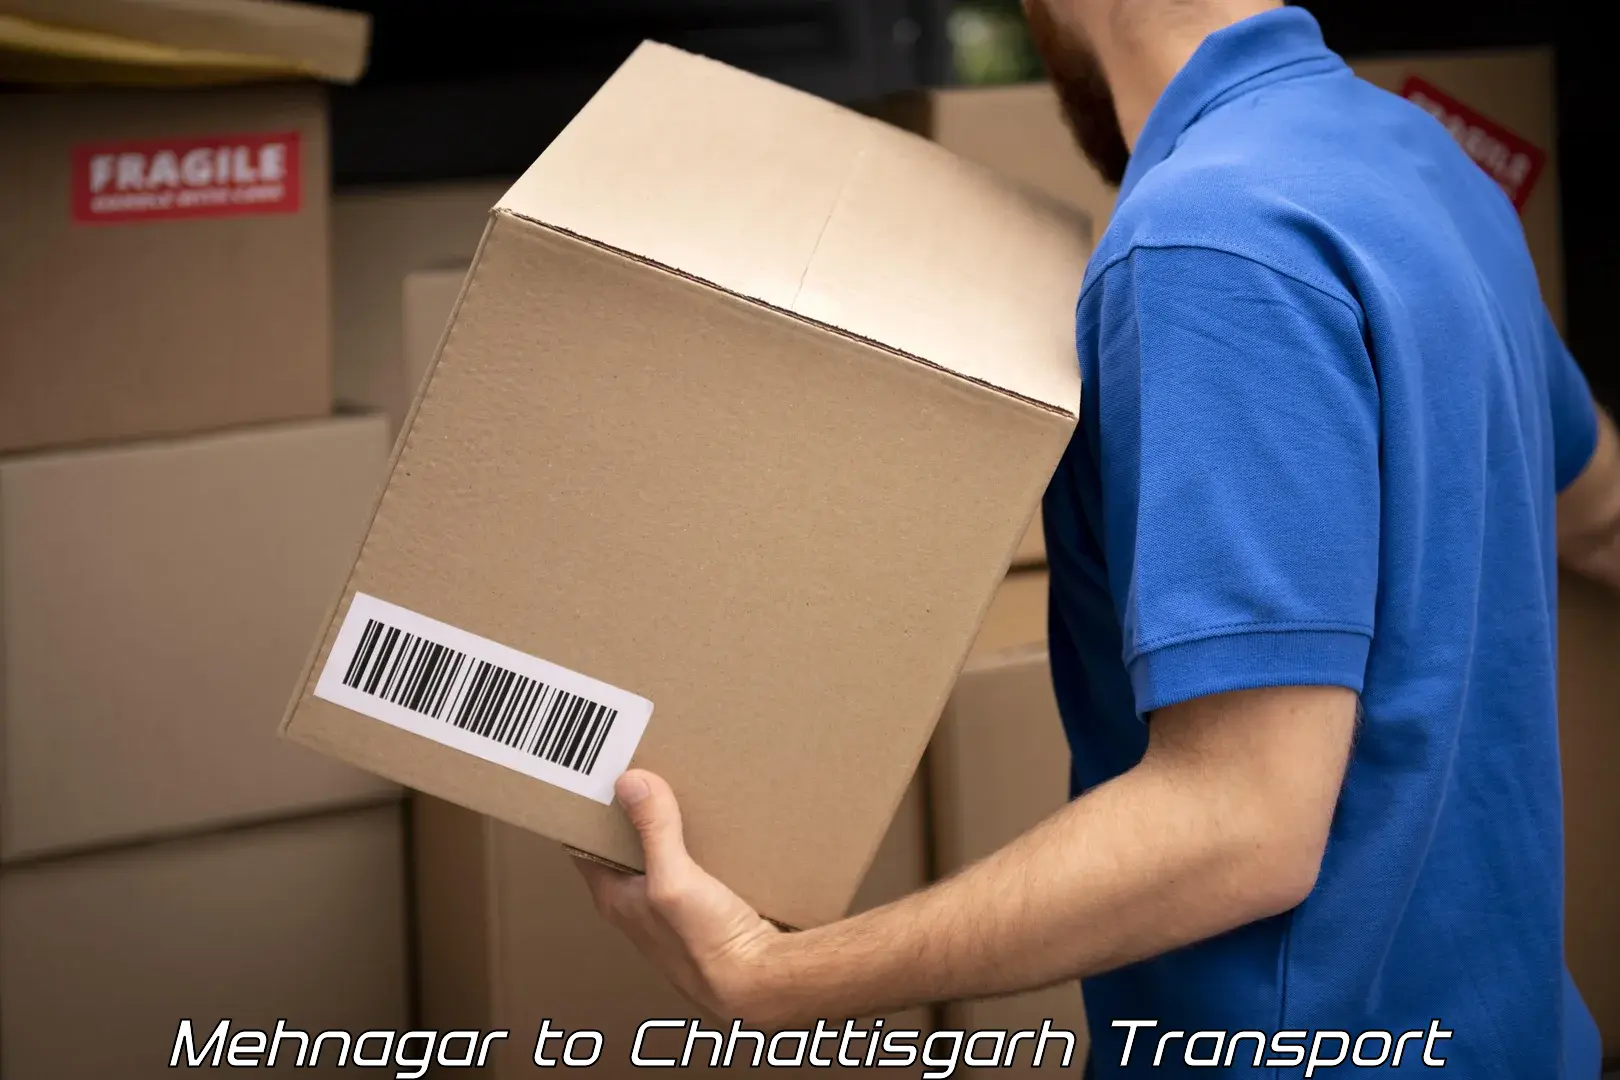 Delivery service Mehnagar to Chhattisgarh